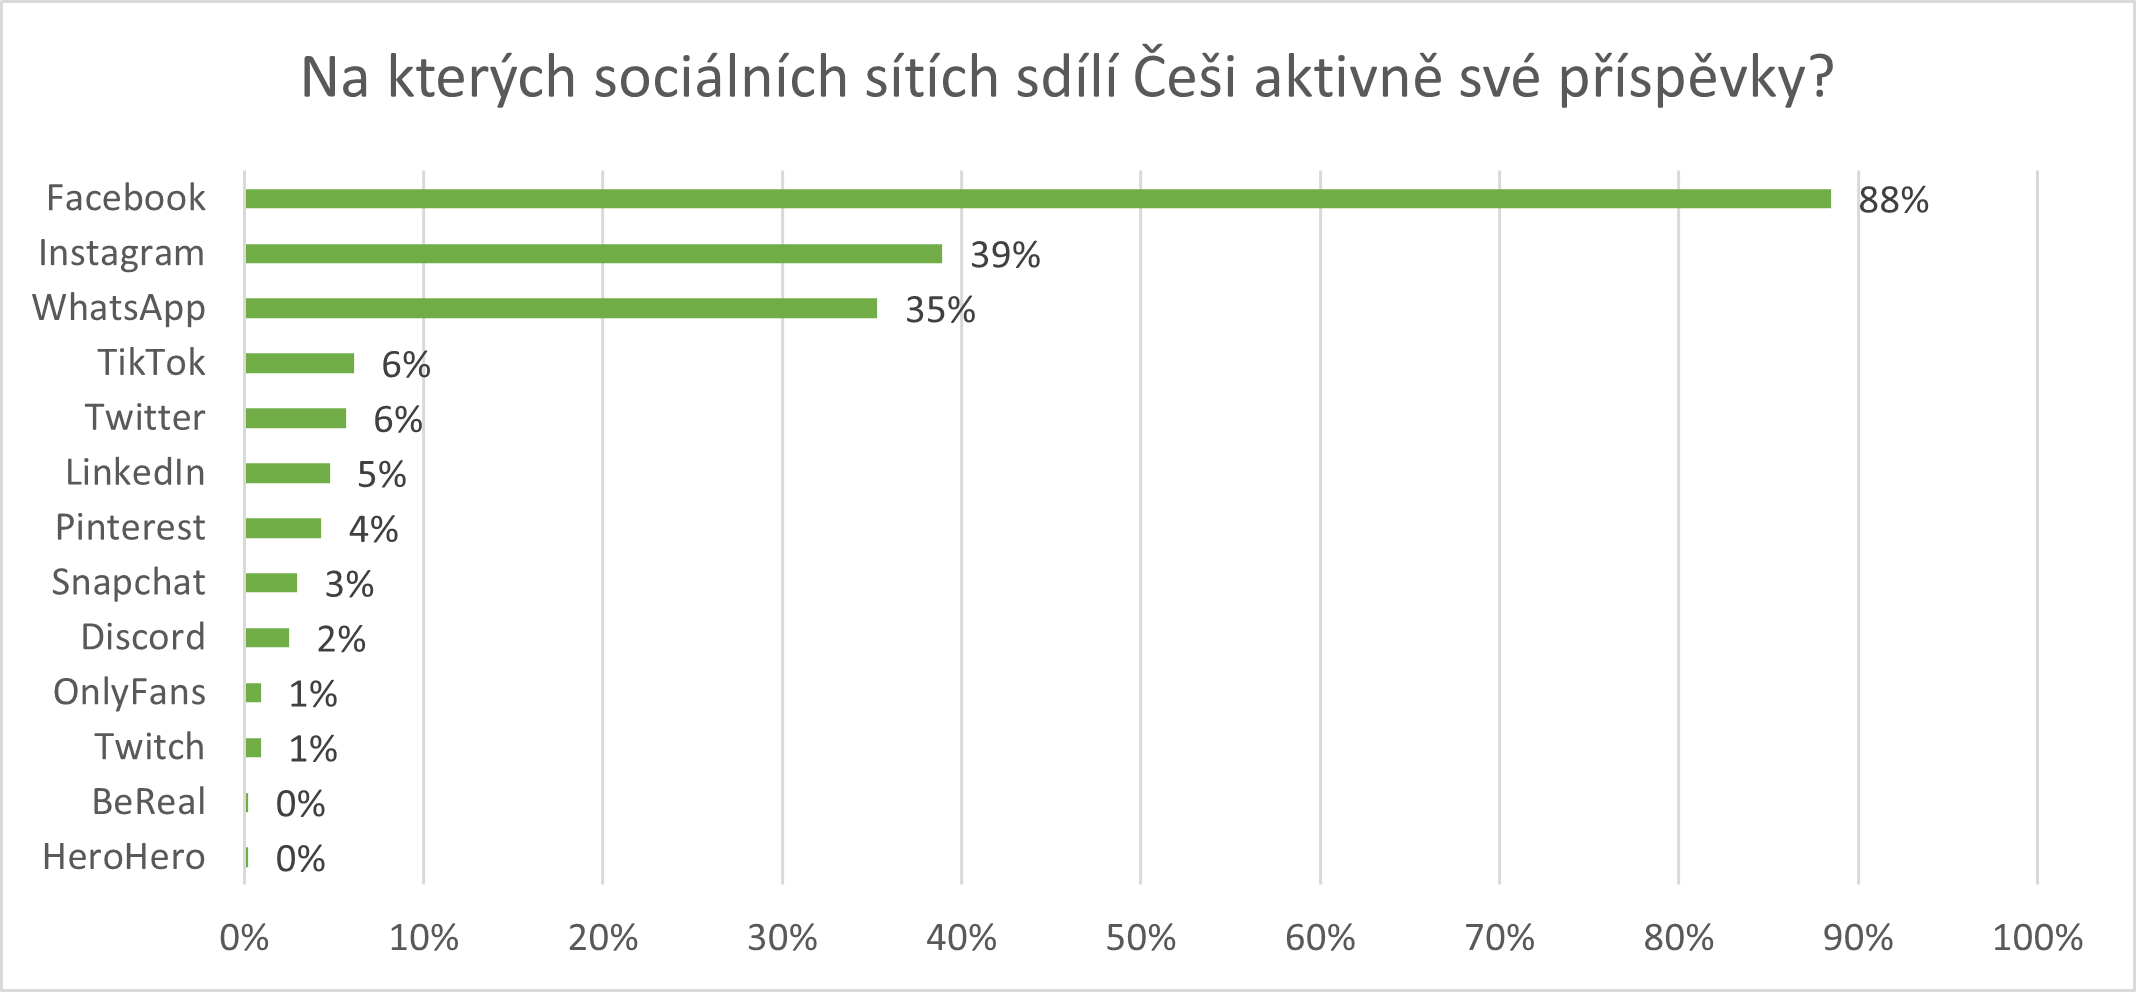 Na kterých sociálních sítích sdílí Češi aktivně své příspěvky?